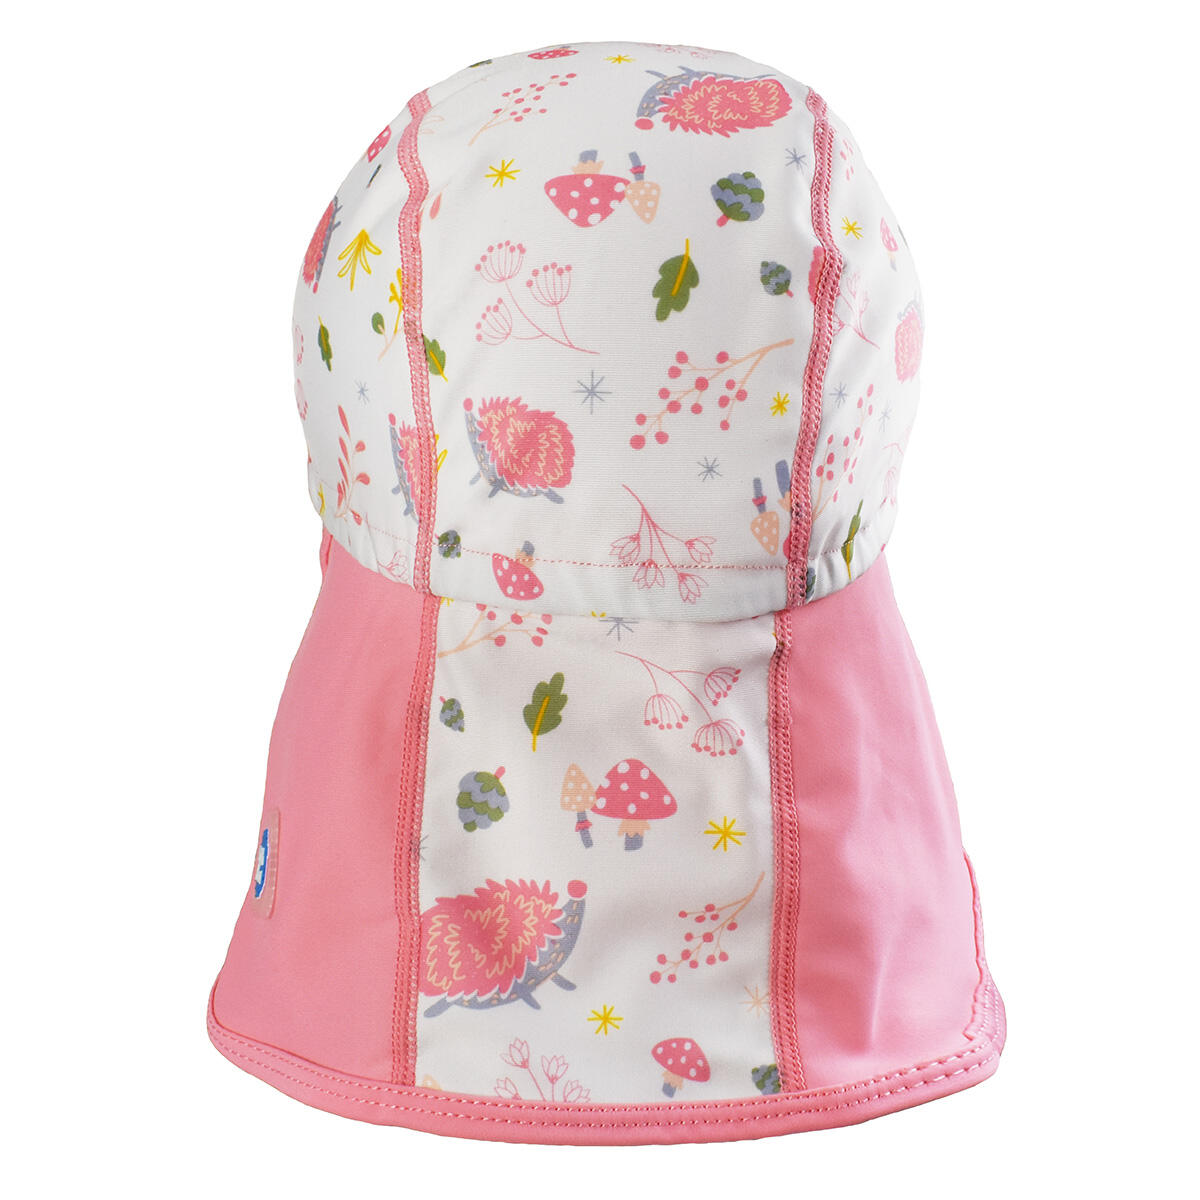 Splash About Baby Kids Legionnaire Sun Hat, Forest Walk 1-3 Years - Pink/White